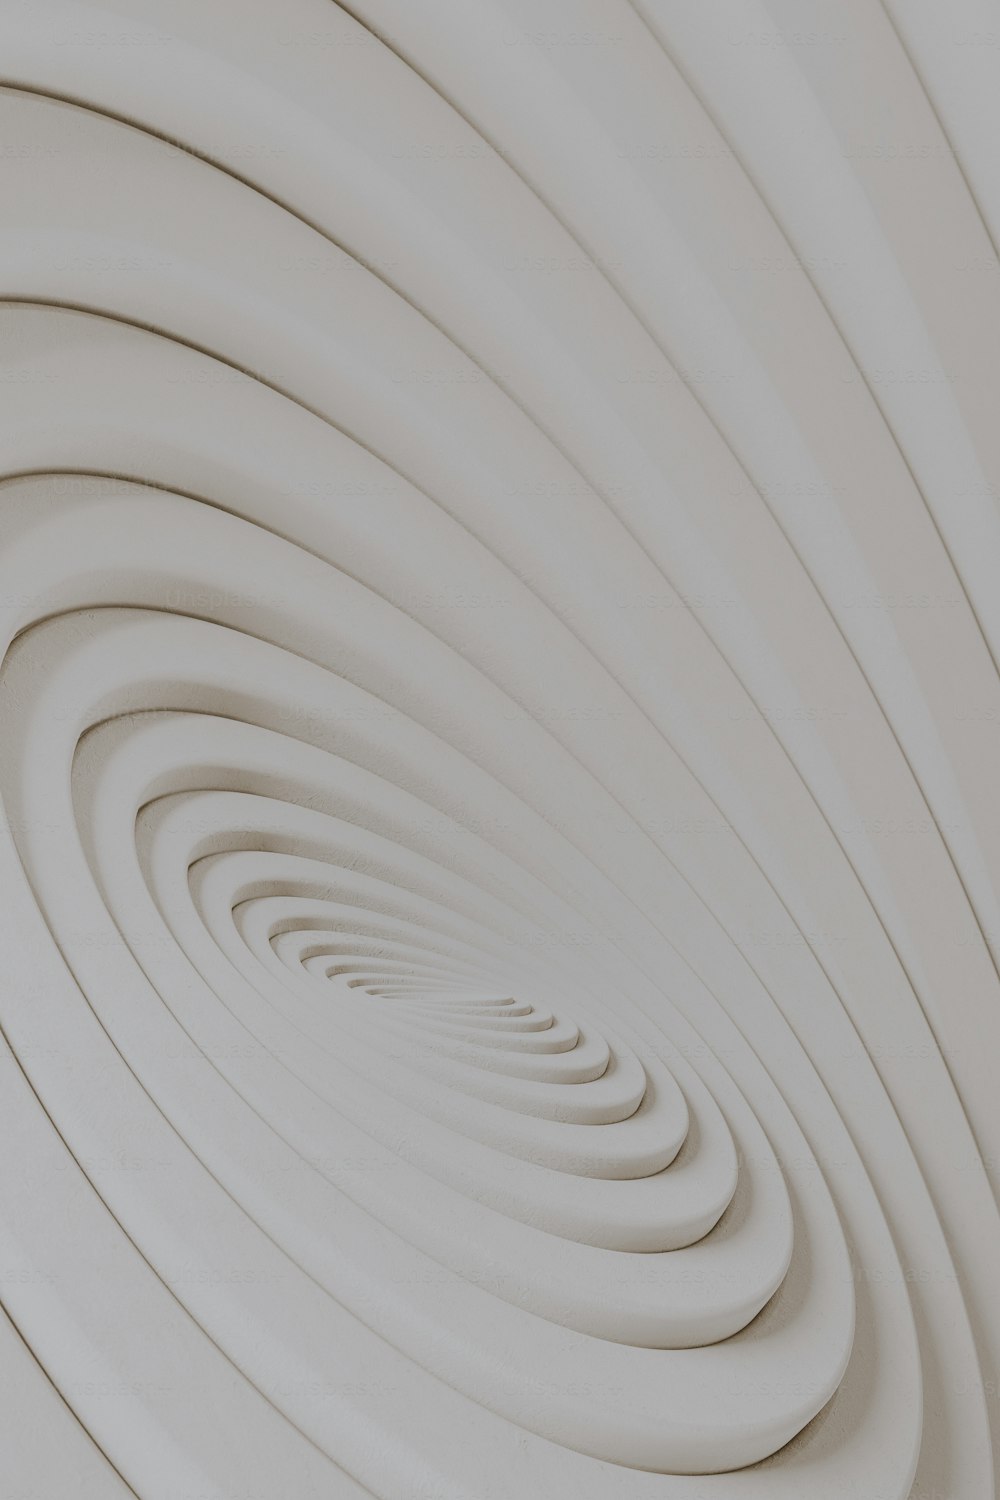 Une photo abstraite d’un dessin en spirale blanche